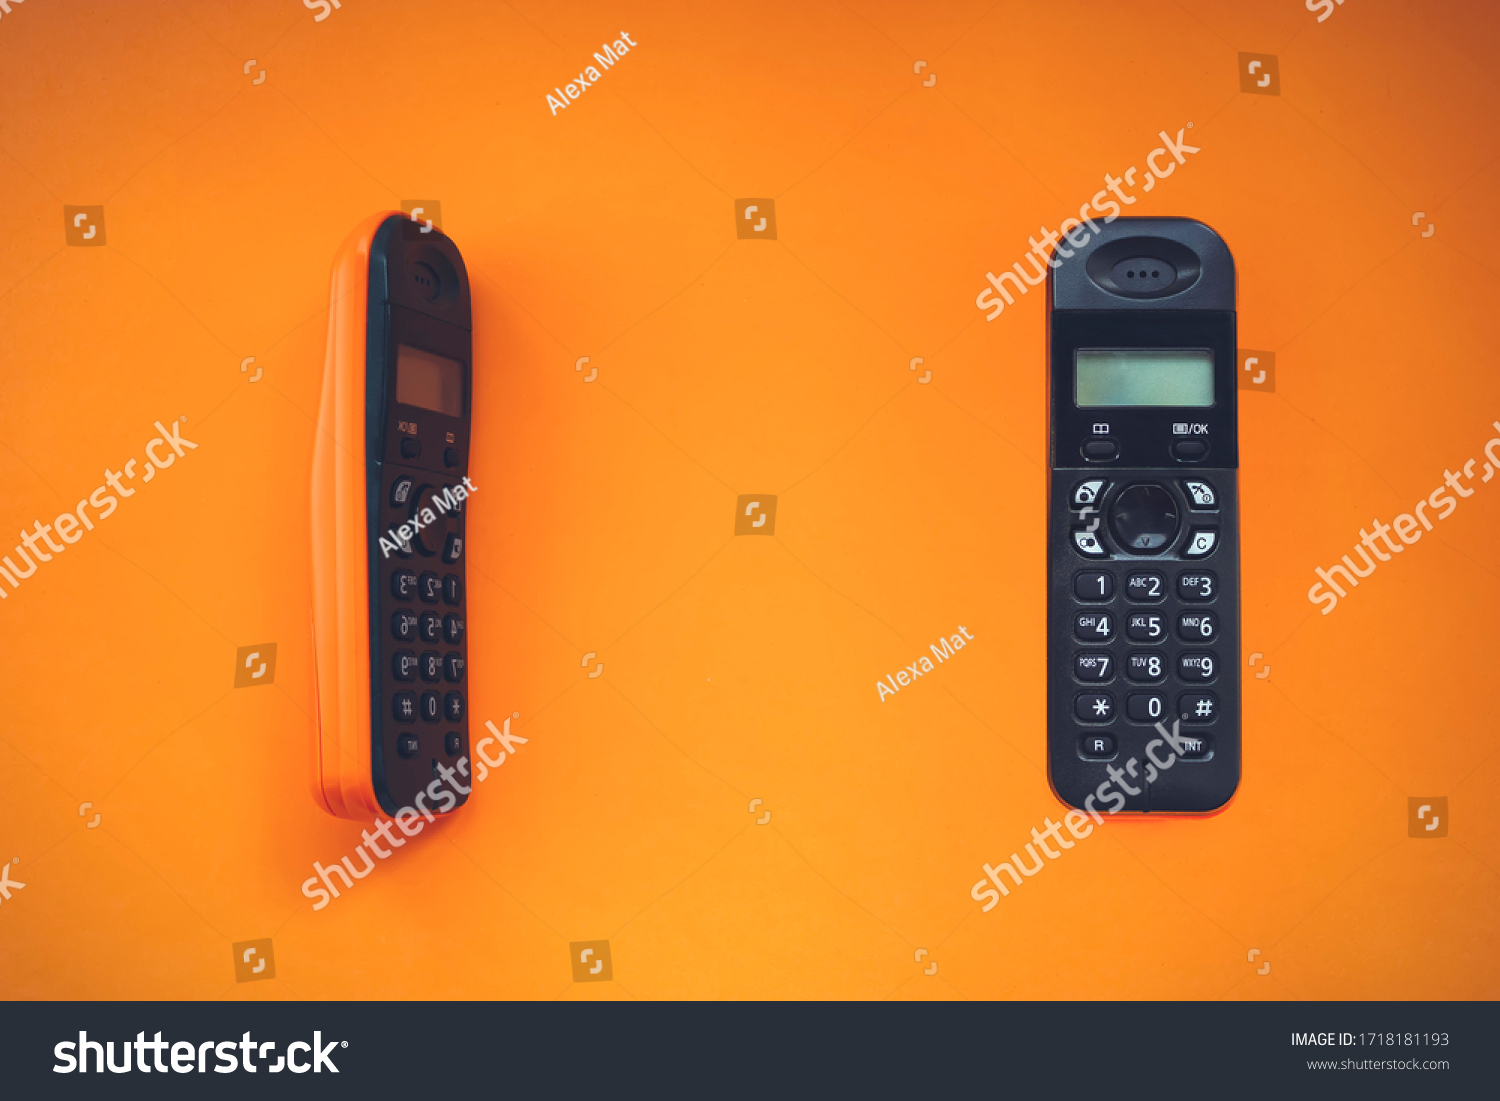 Two wireless cordless telephone, radiotelephone, dect cordless phone wireless phone, radiotelephone, radio phone on orange background #1718181193